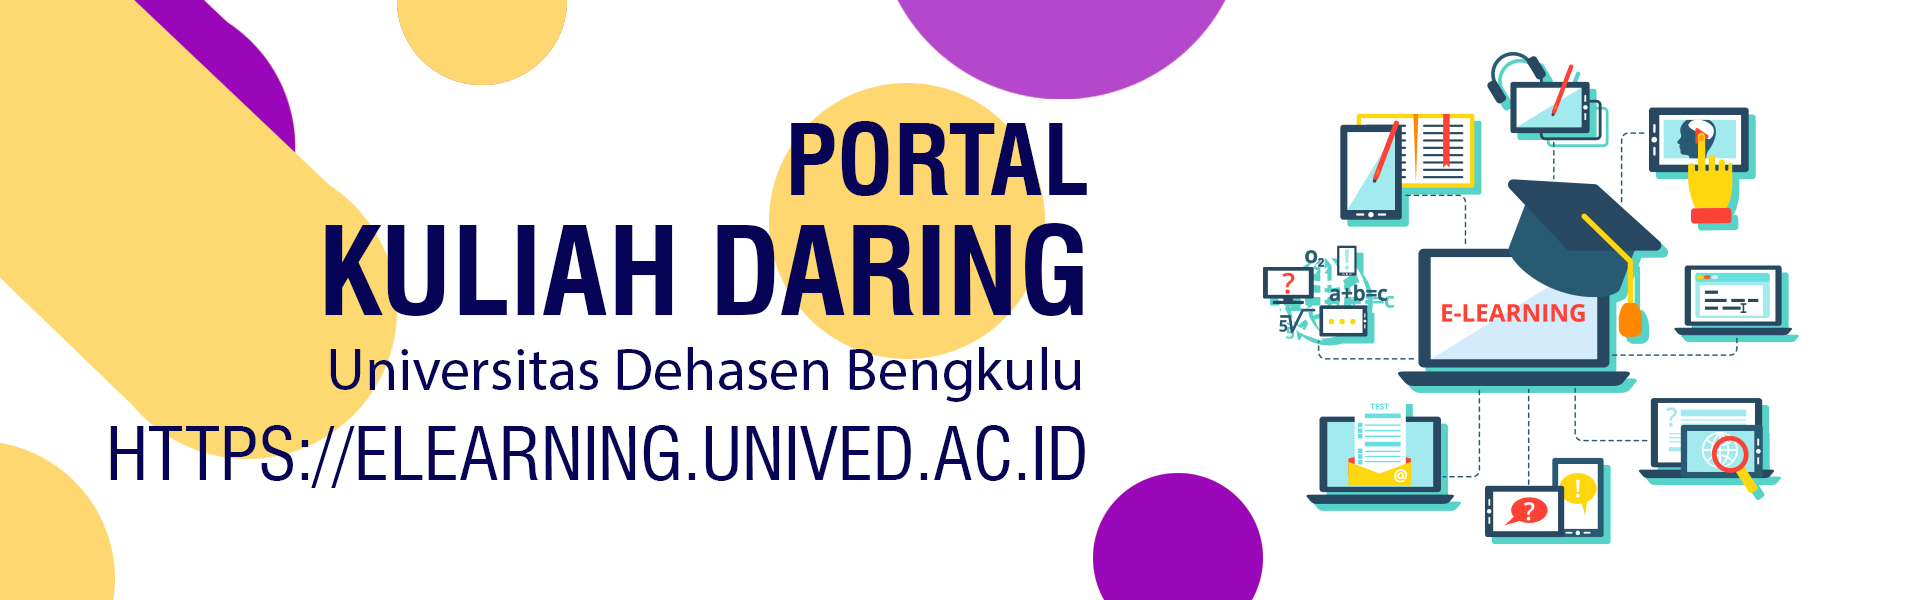 Portal Kuliah Daring Universitas Dehasen Bengkulu